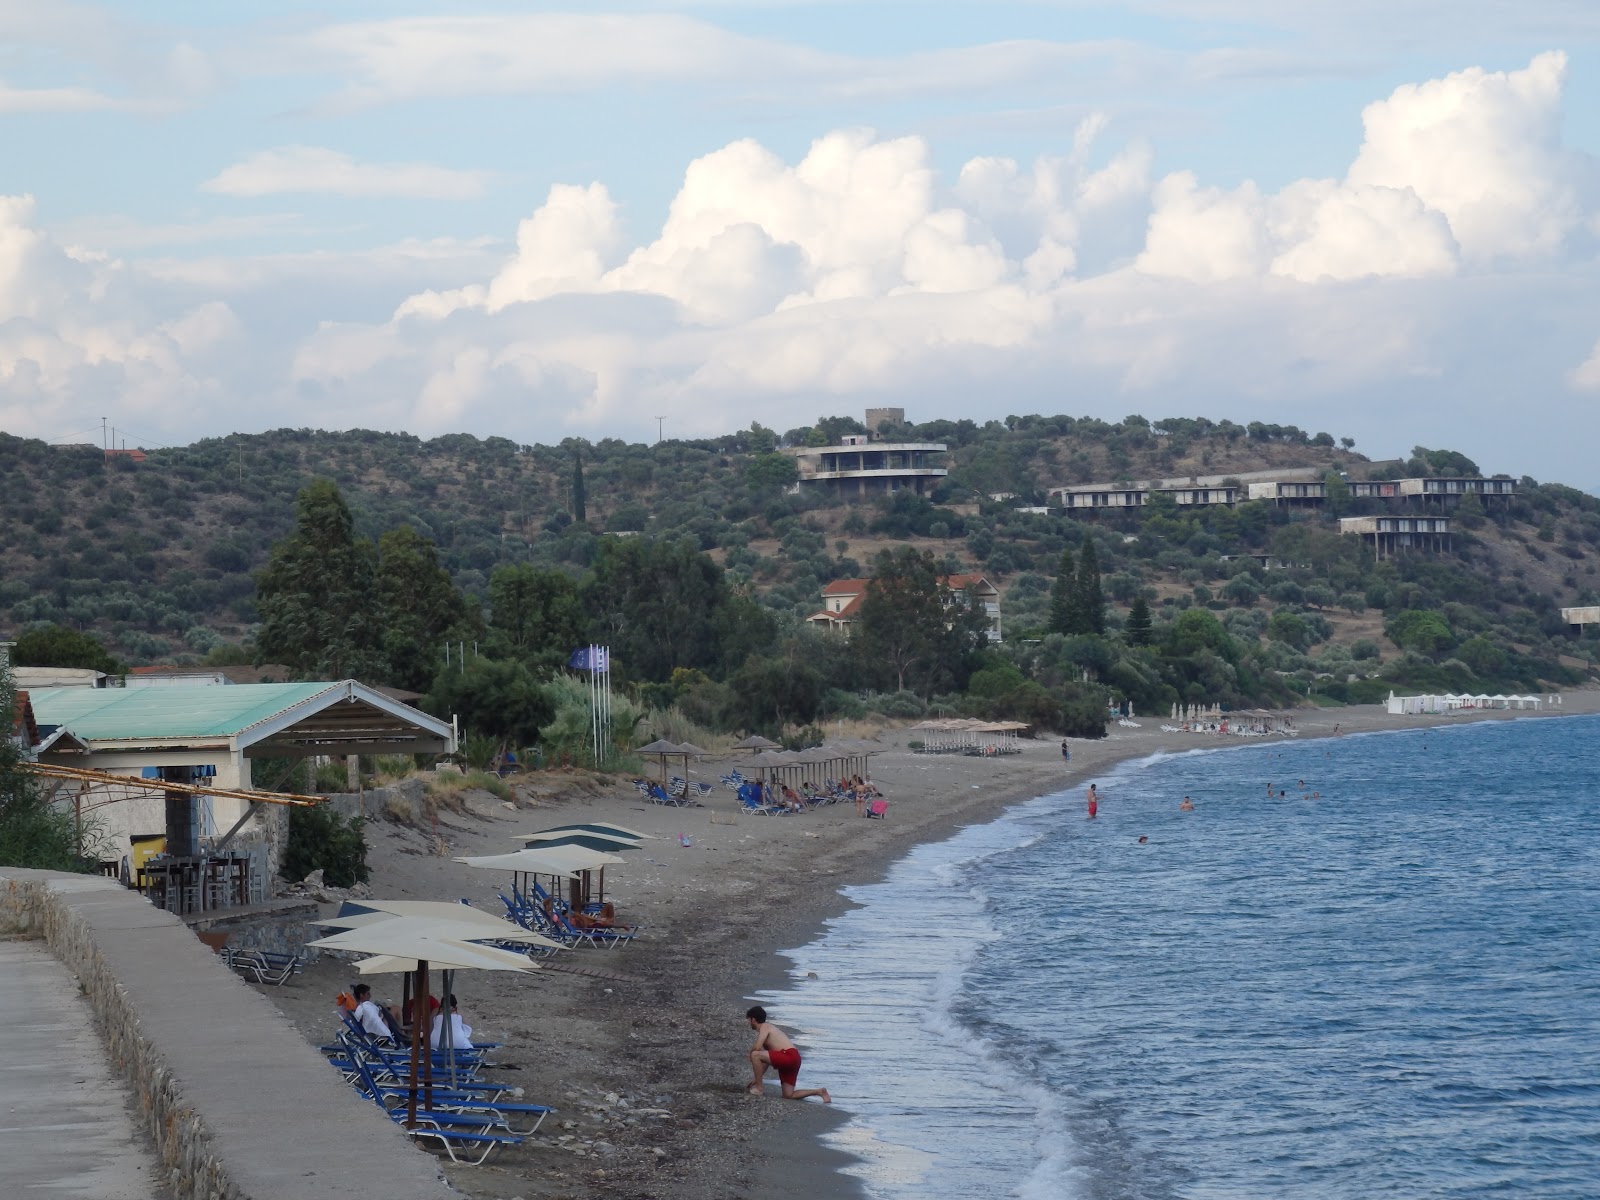 Zdjęcie Selinitsa beach obszar udogodnień